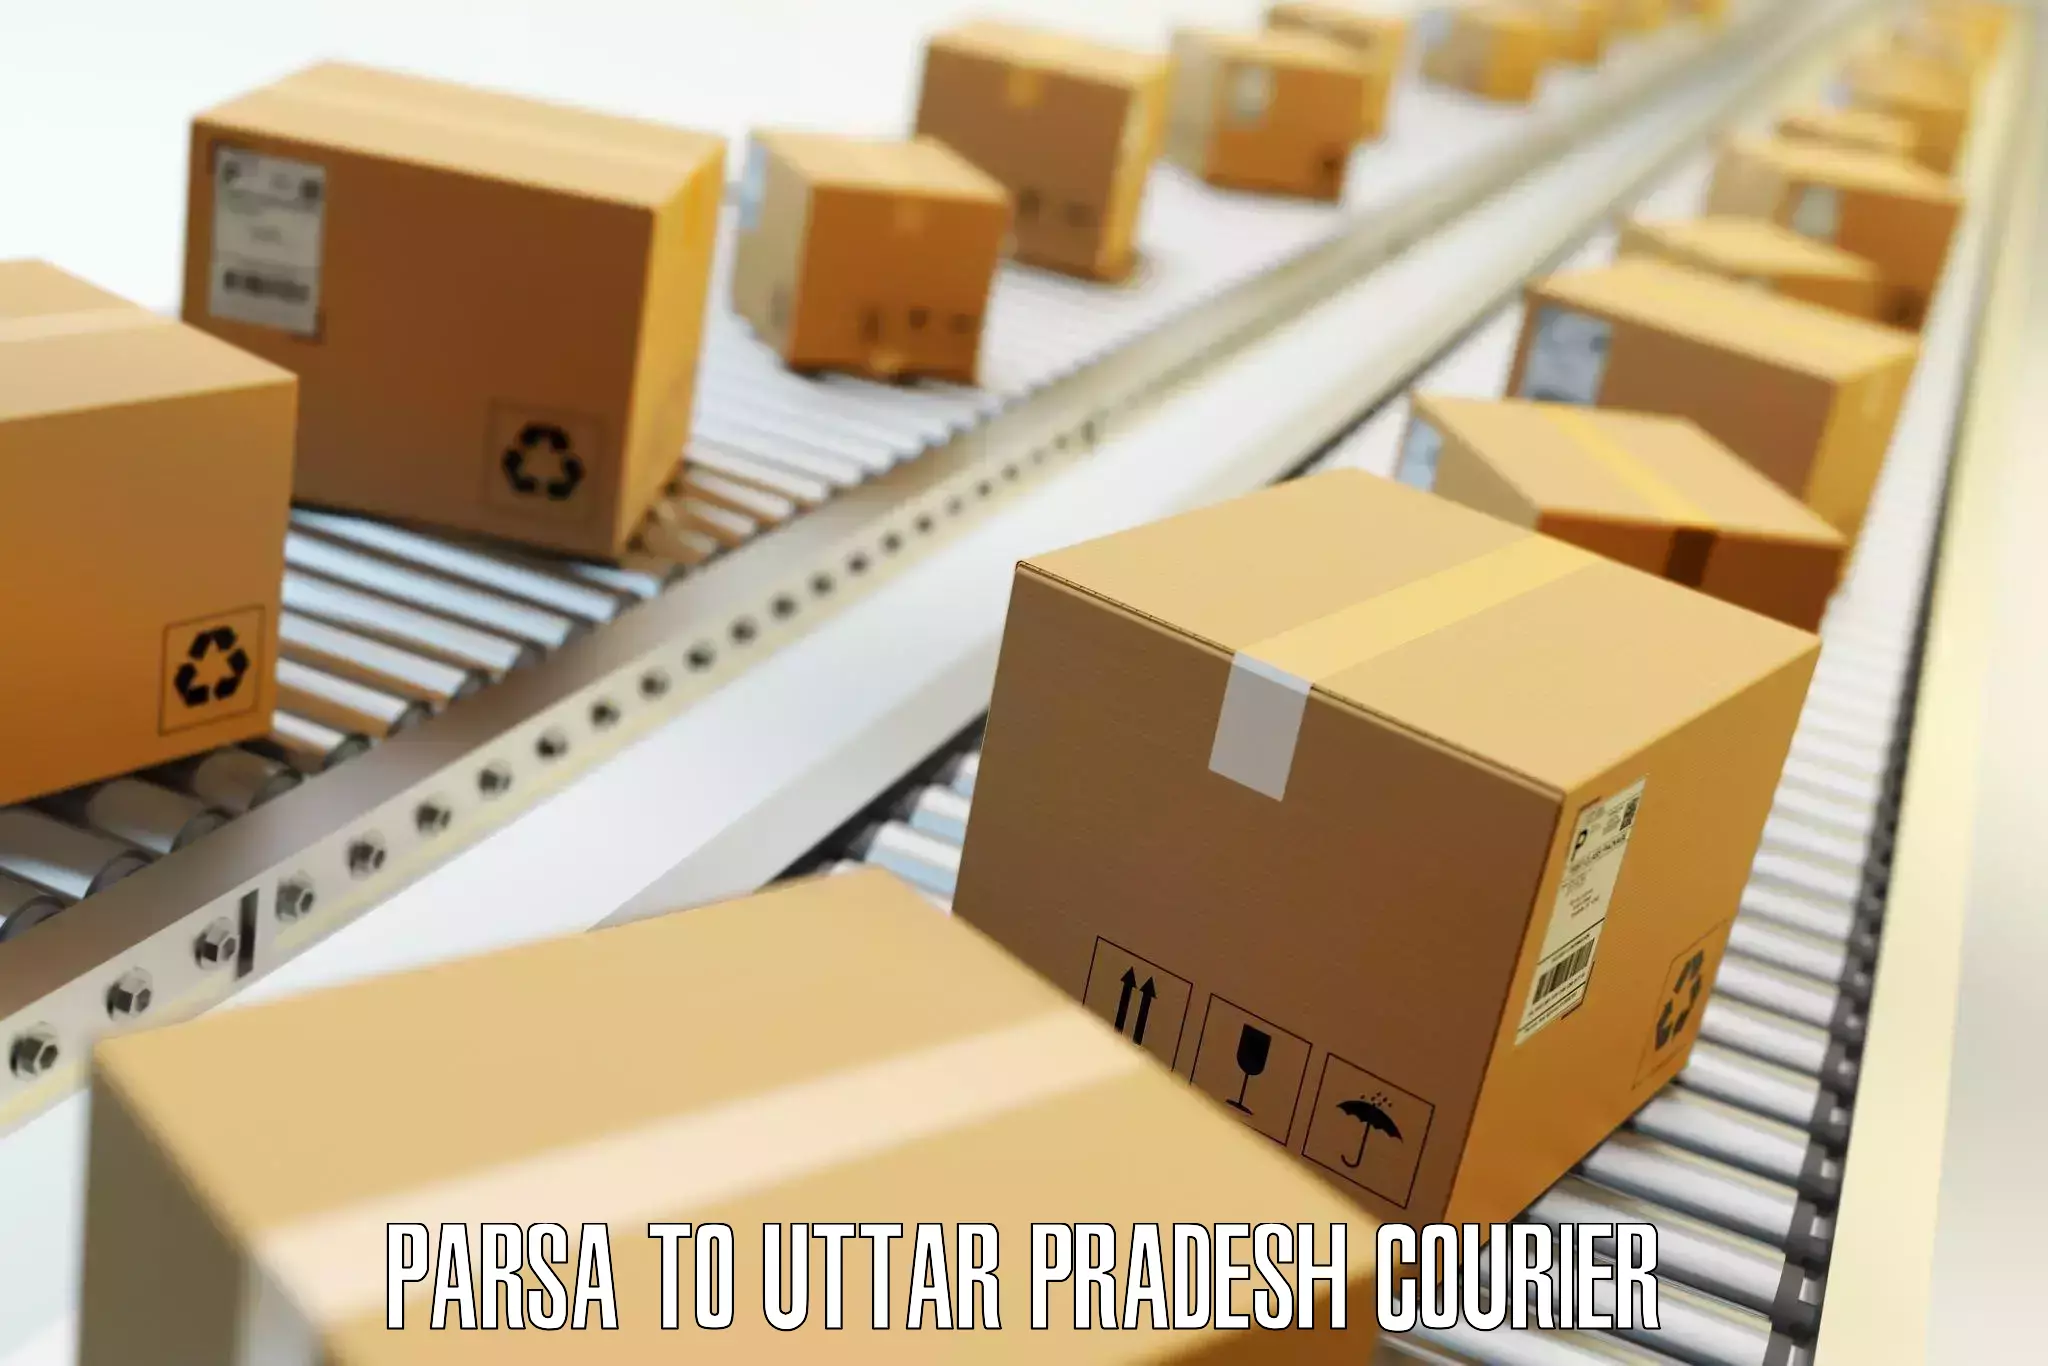 Quick baggage pickup Parsa to Uttar Pradesh